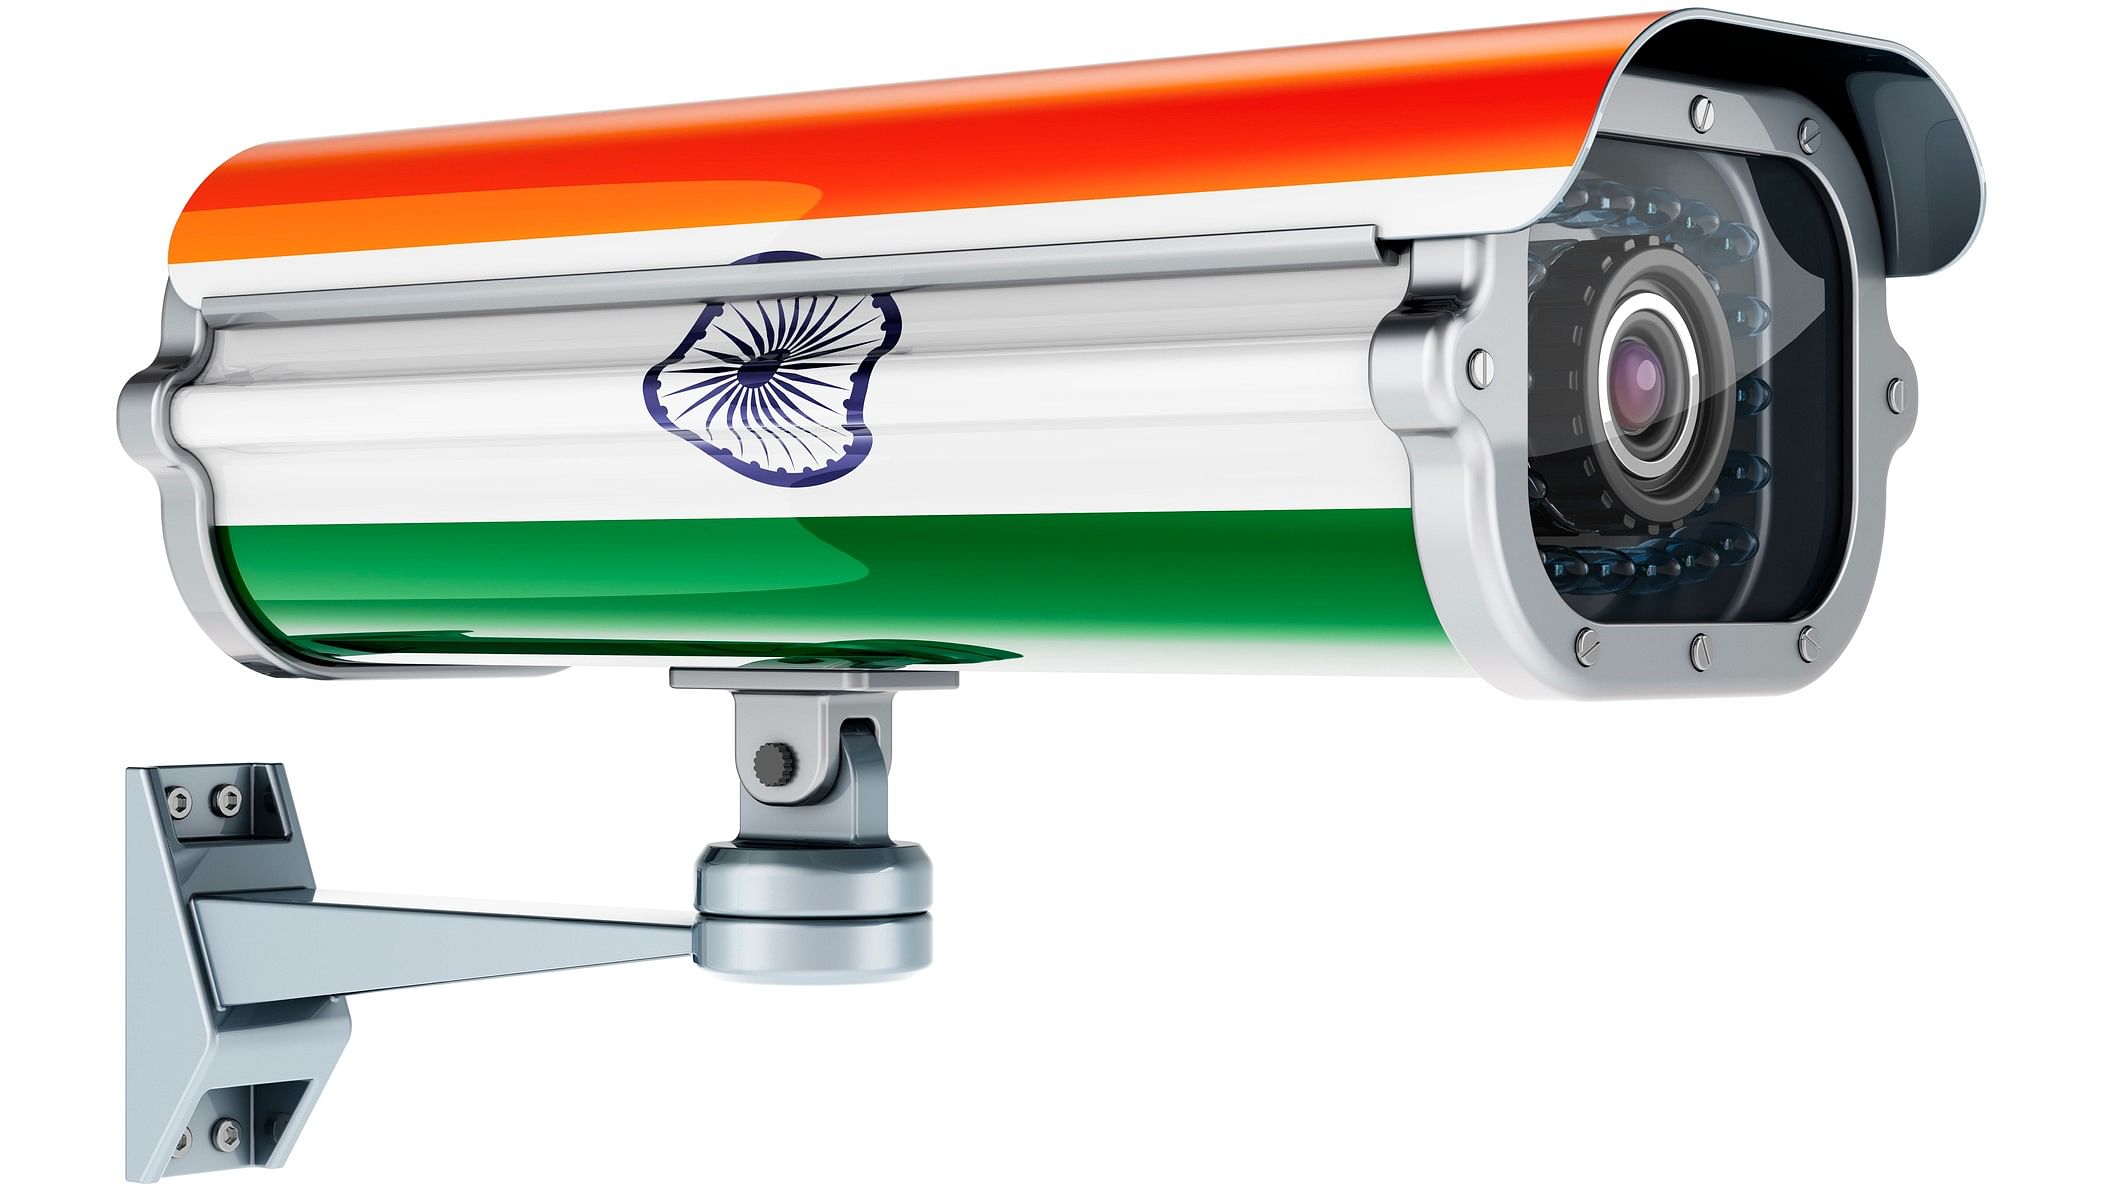 <div class="paragraphs"><p>Representative image of a surveillance camera with the India flag.</p></div>